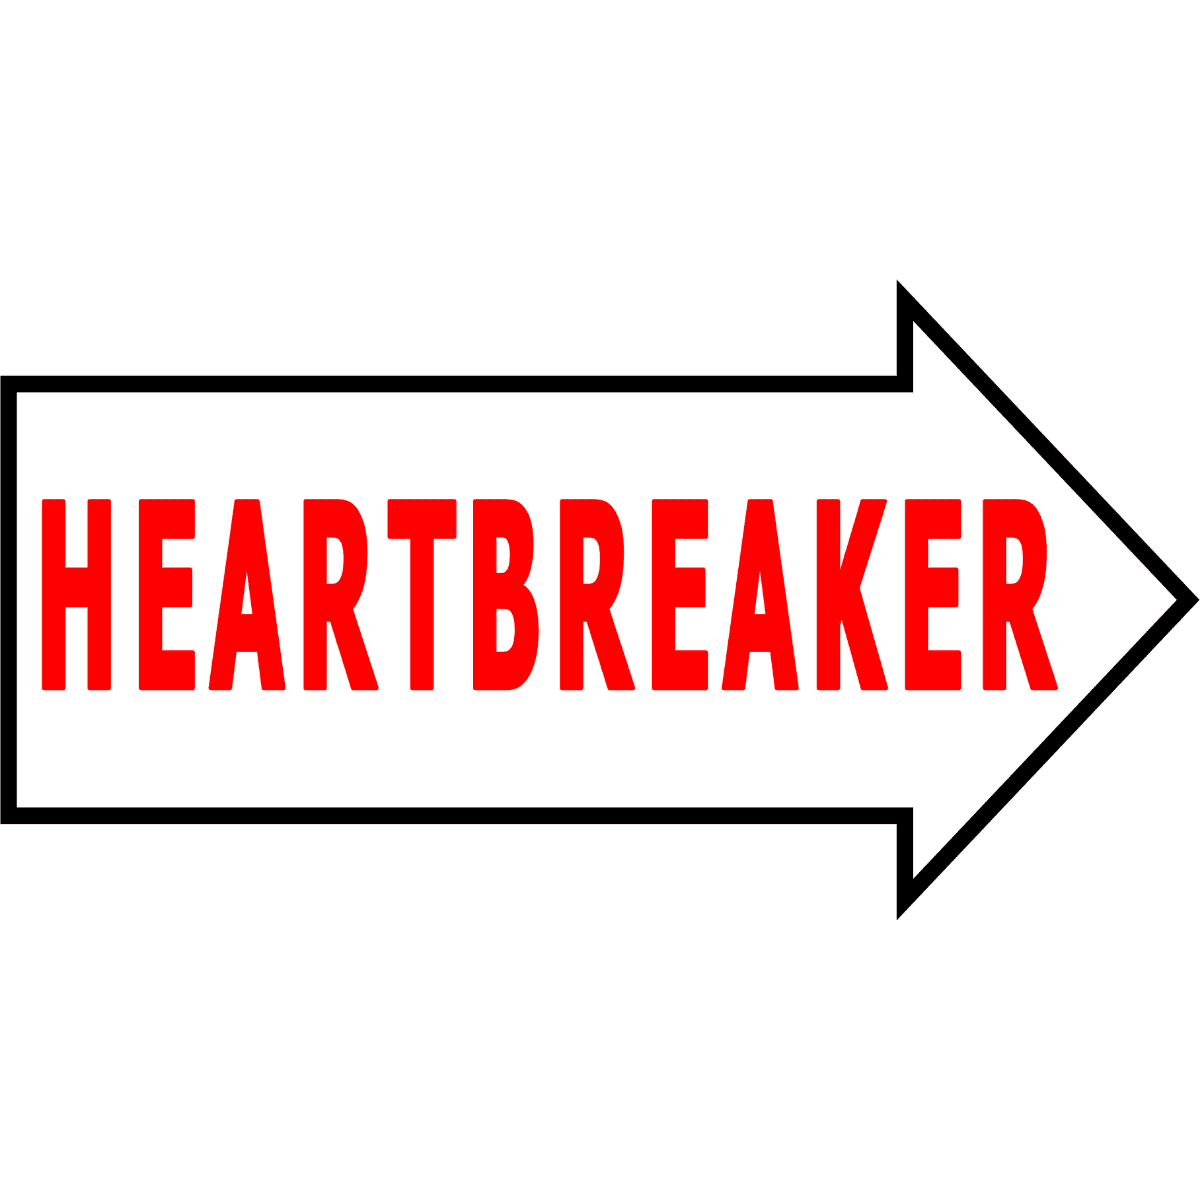 Heartbreaker-1